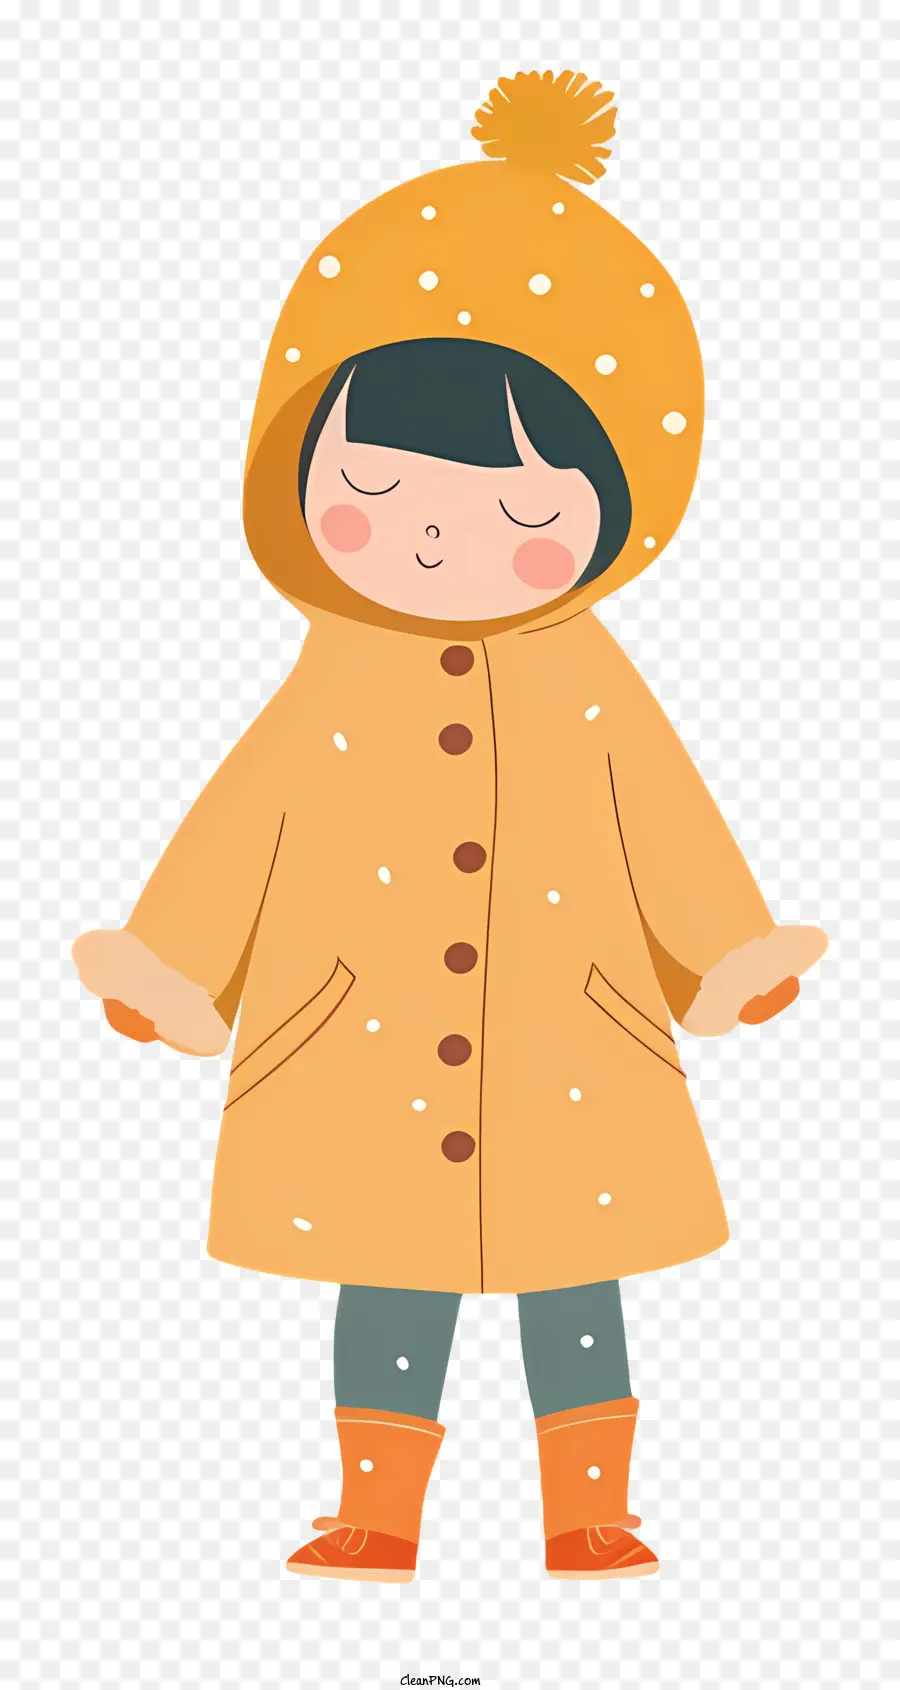 Bambina in pioggia per la moda invernale GIOVANA CARATTERO CARATTORE GIALLO - Ragazza in inverno vestiti che pregano con gli occhi chiusi